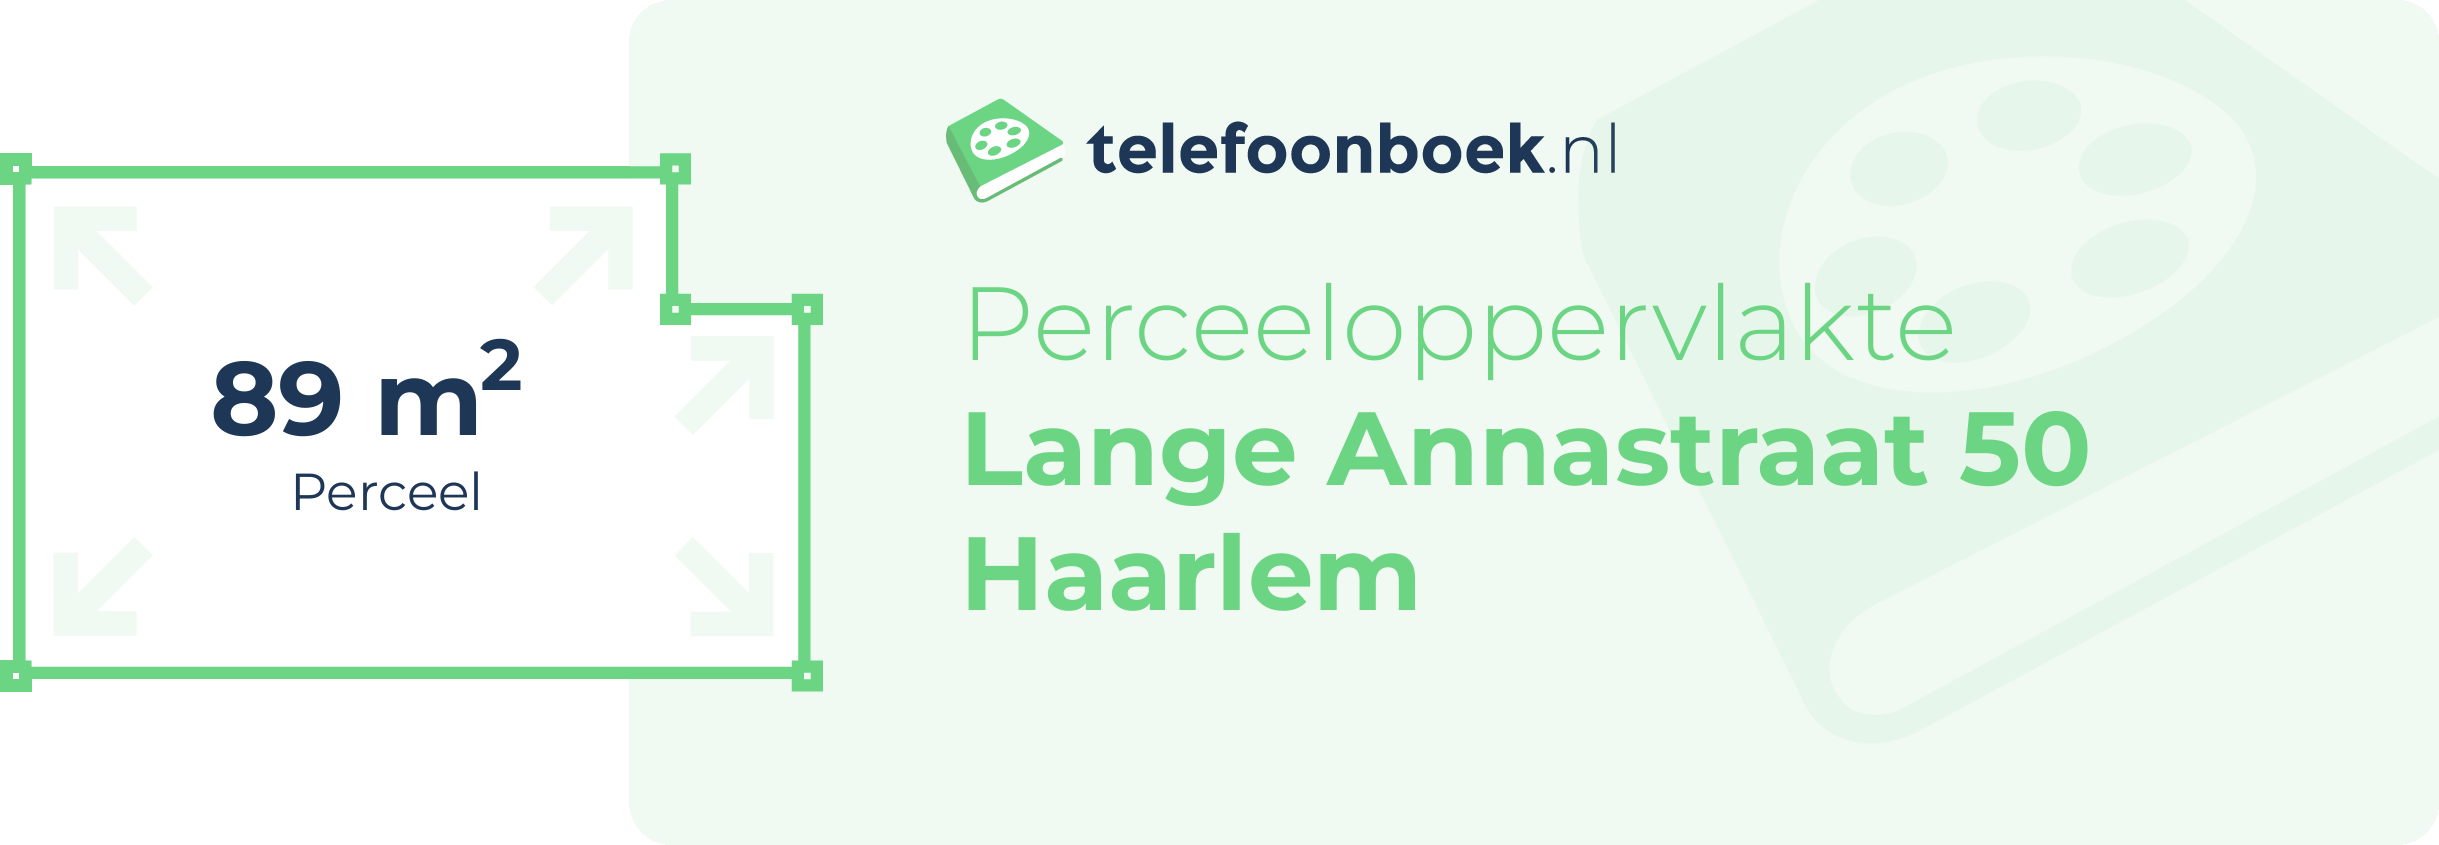 Perceeloppervlakte Lange Annastraat 50 Haarlem